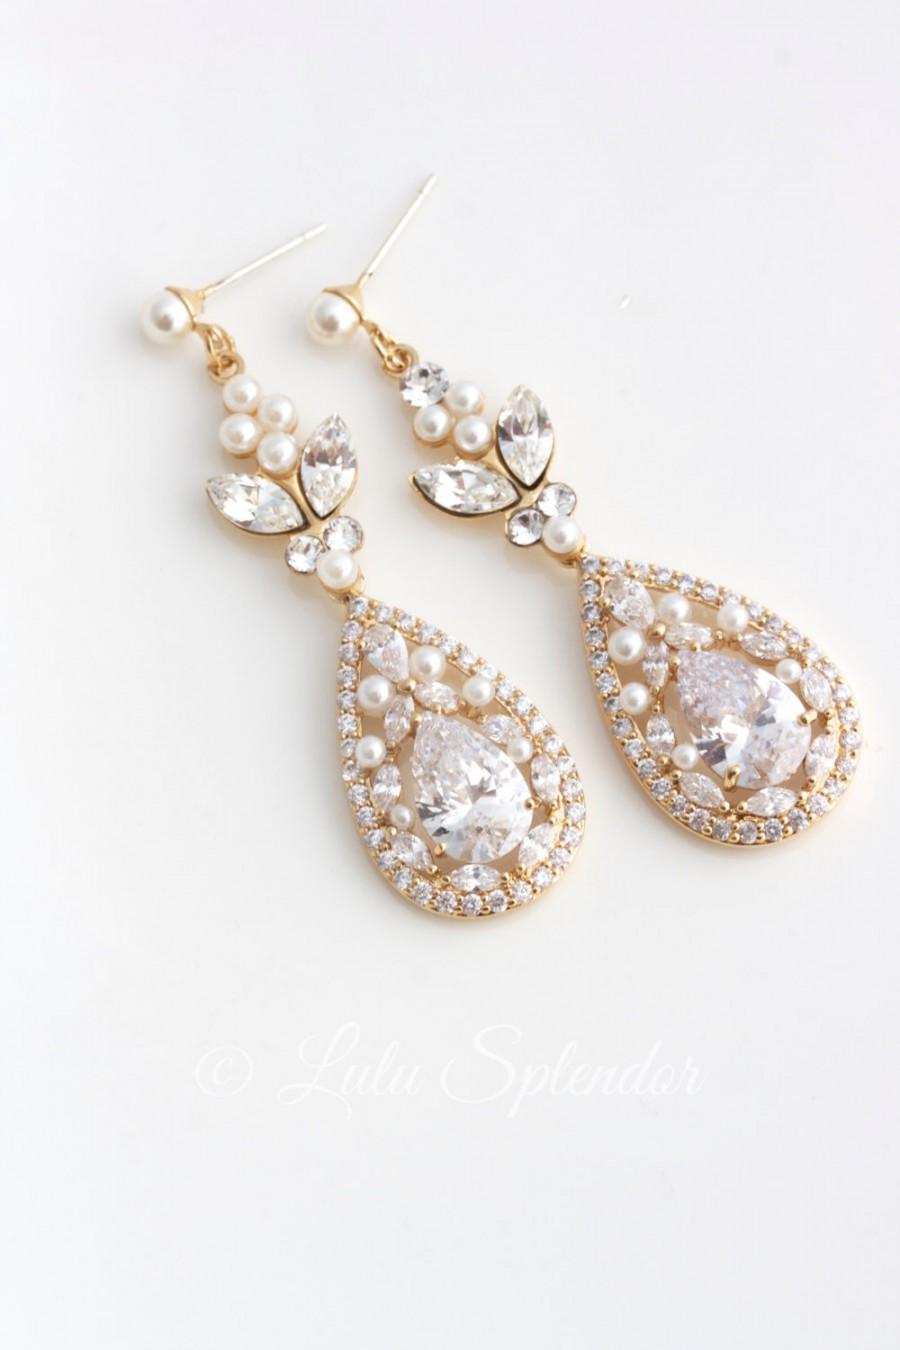 زفاف - Gold Bridal Earrings Long Wedding Earrings Cubic Zirconia Teardrop Wedding Jewelry Swarovski Crystal Wedding Jewelry VIVIENNE